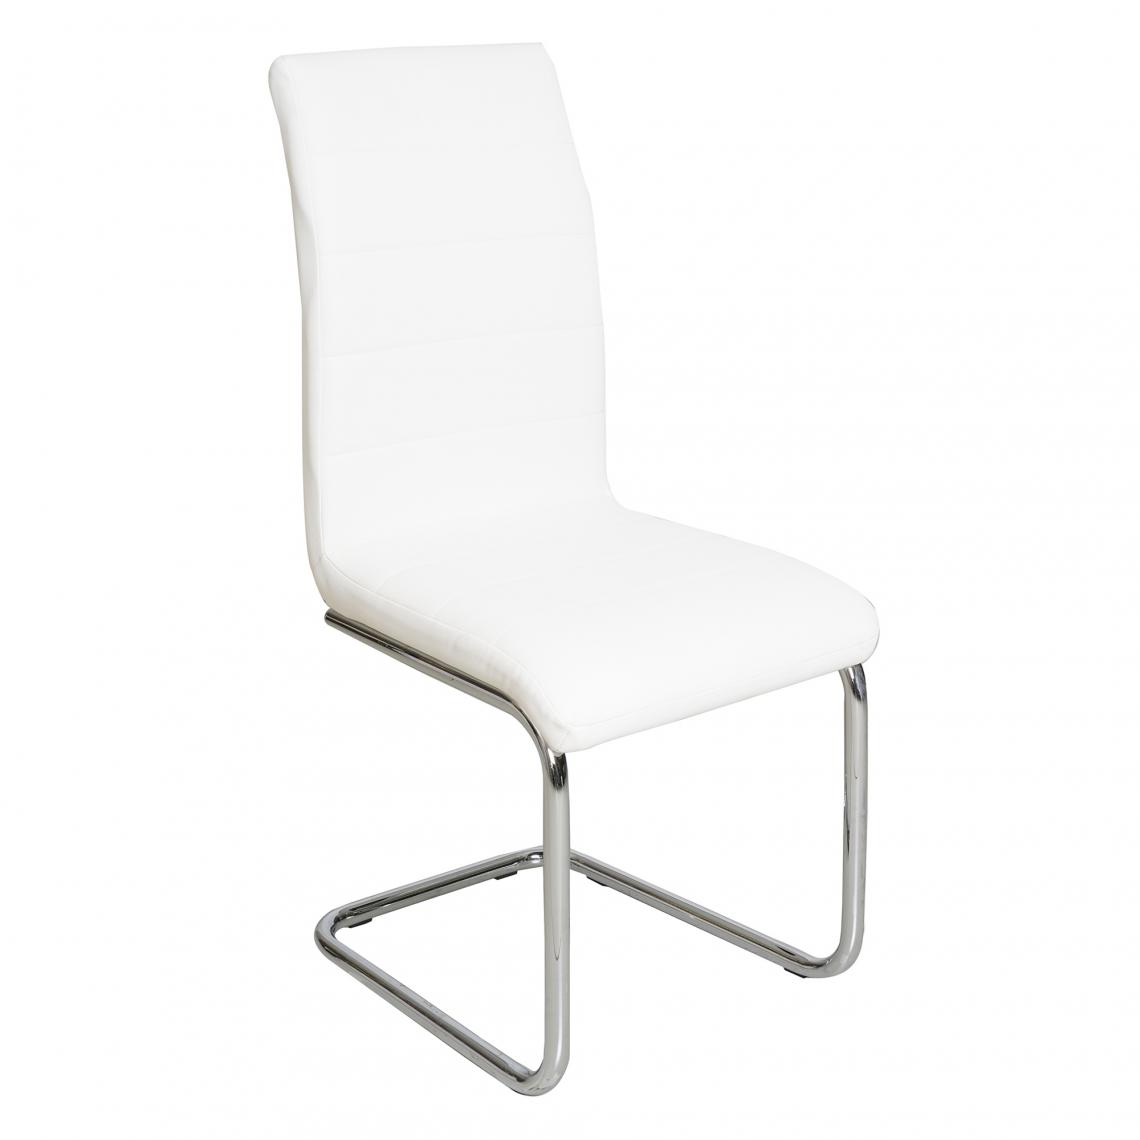 Alter - Chaise moderne en éco-cuir, blanc et métal chromé, 43 x 98 x 57 cm - Chaises